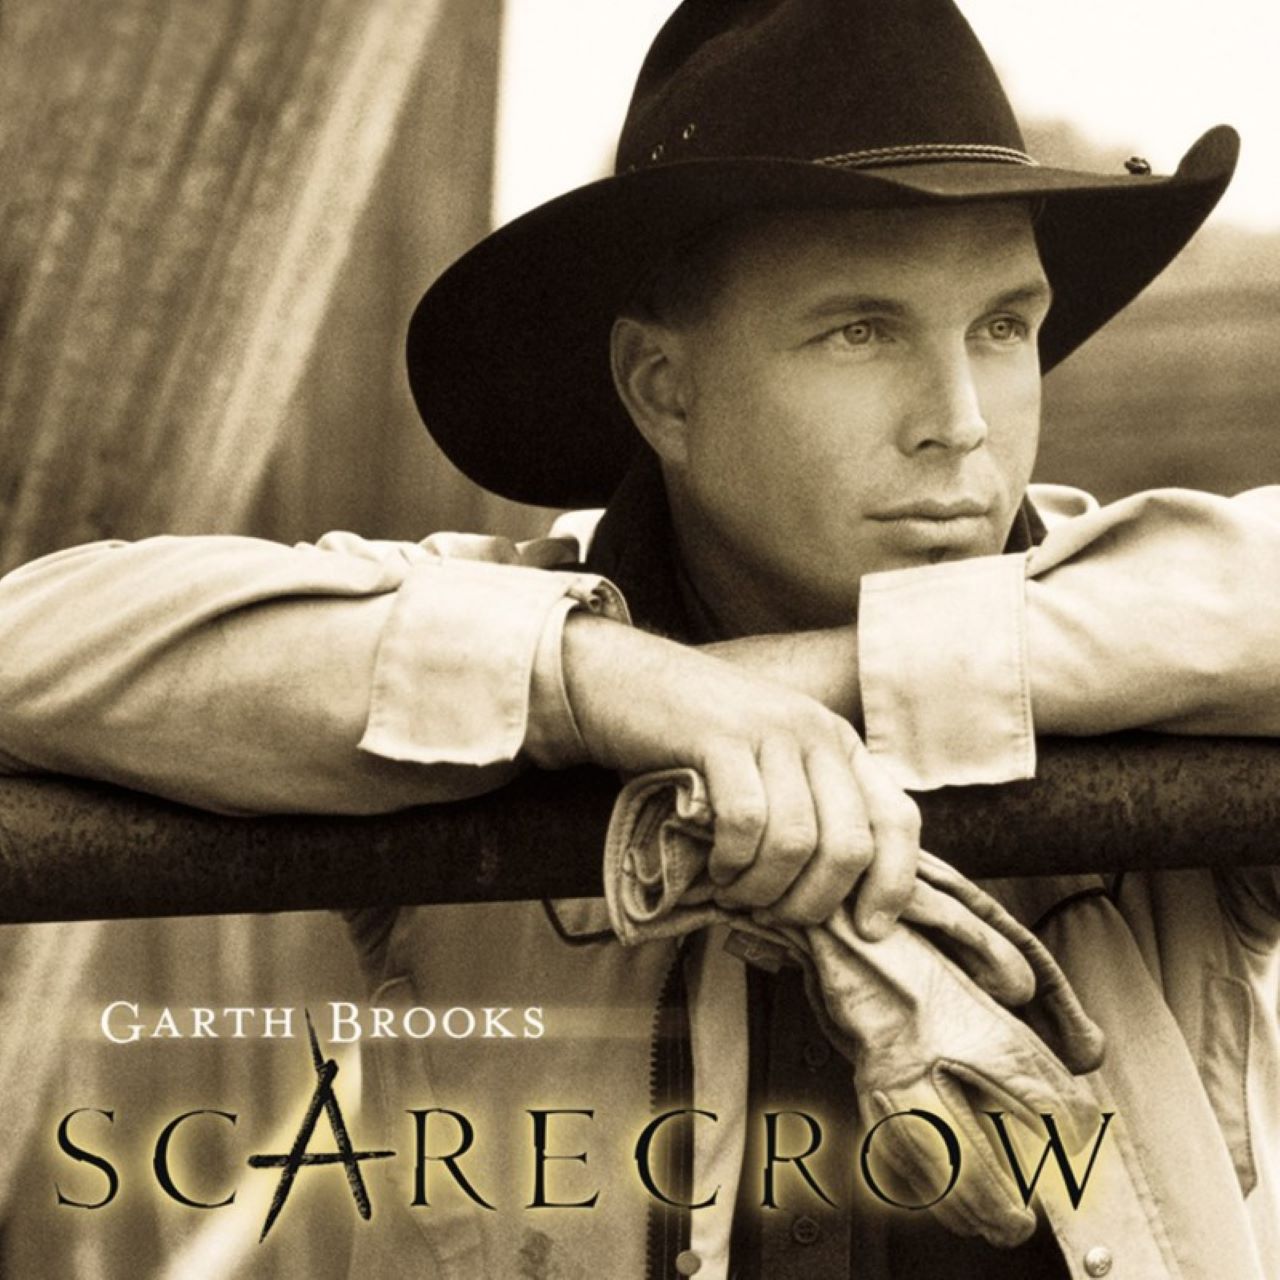 Garth Brooks - Scarecrow cover album